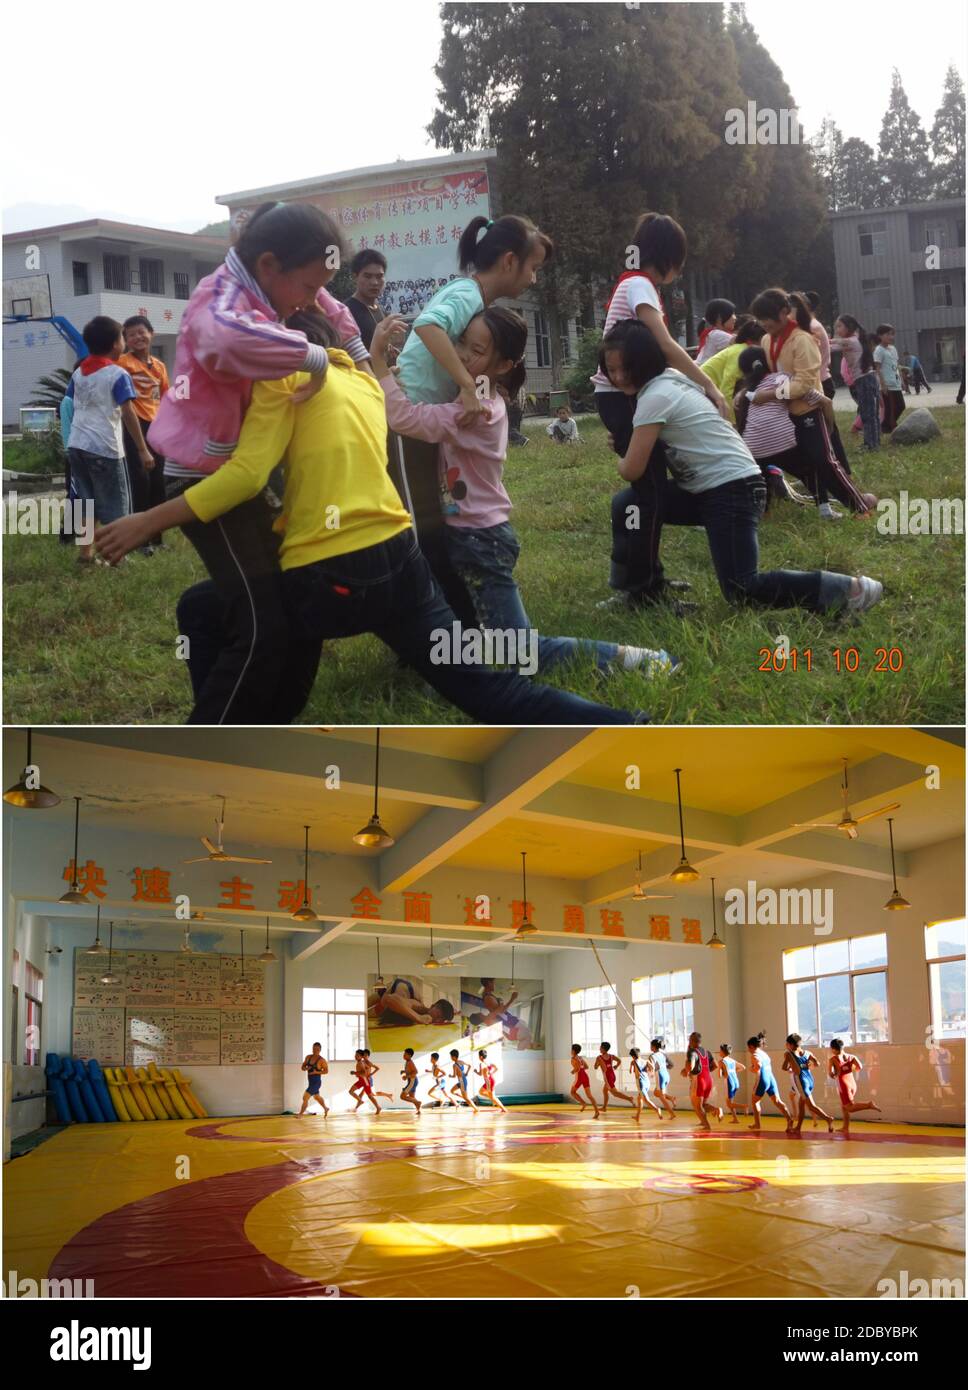 (201118) -- NANCHANG, 18 novembre 2020 (Xinhua) -- dans cette photo combinée, la partie supérieure prise le 20 octobre 2020 montre des élèves pratiquant la lutte sur l'herbe à l'école Matian de Pingxiang, dans la province de Jiangxi, dans l'est de la Chine; la partie inférieure prise le 11 novembre. 2020 montre des élèves pratiquant la lutte au stade de l'école Matian à Pingxiang, dans la province de Jiangxi en Chine orientale. L'école Matian de Wugong Mountain, dans la ville de Pingxiang, dans la province de Jiangxi, dans l'est de la Chine, est une école rurale avec un programme de lutte solide. Zhu Zhihui, 42 ans, est le directeur de l'école. Dans ses 14 années d'enseignement, Z Banque D'Images